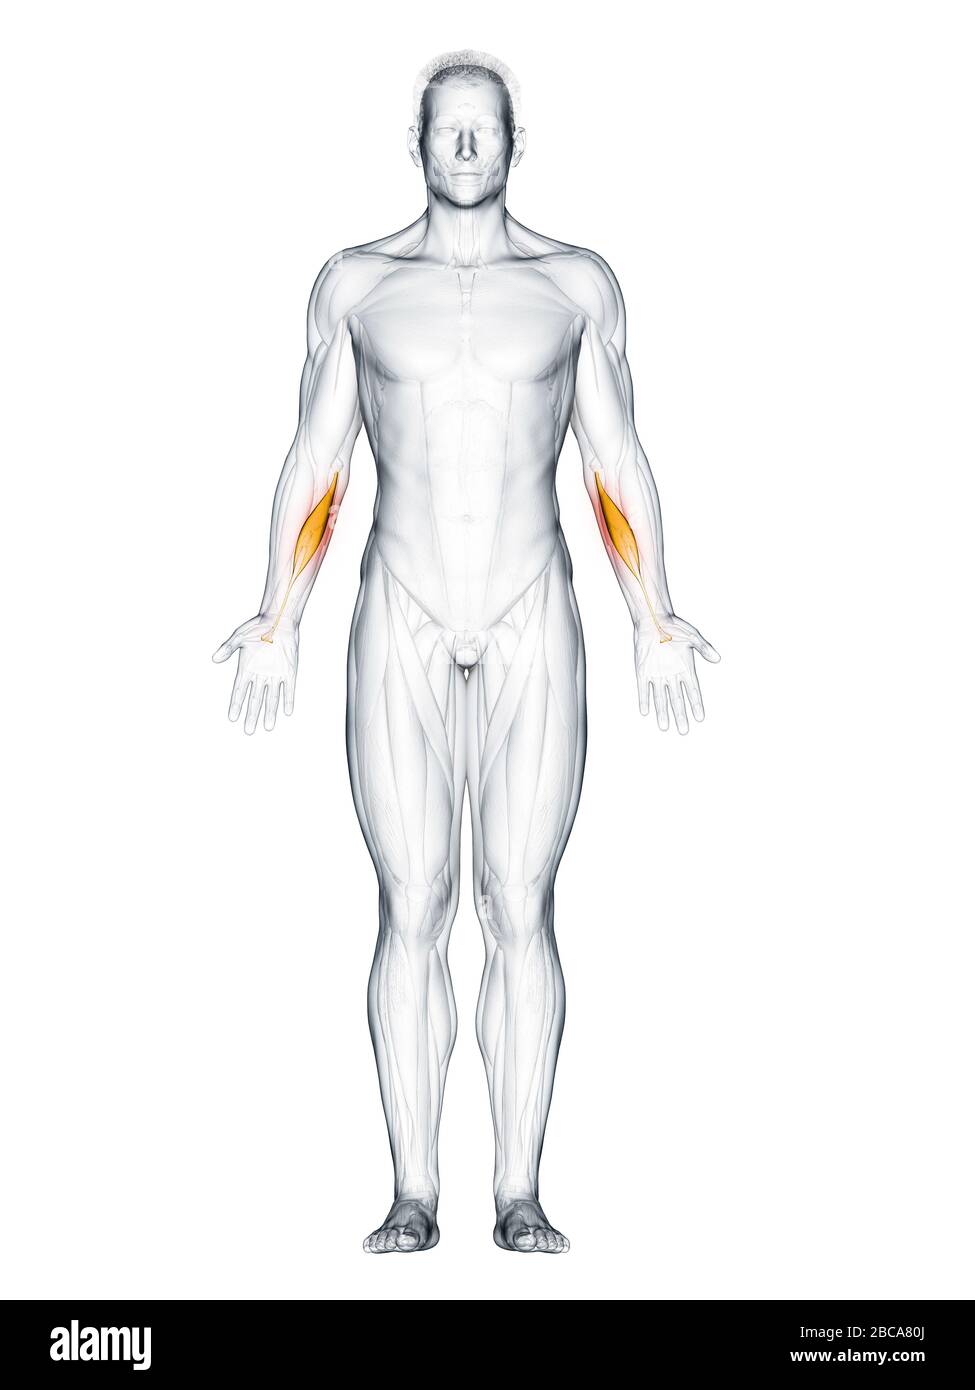 Flexor carpi radialis muscle, illustration. Stock Photo